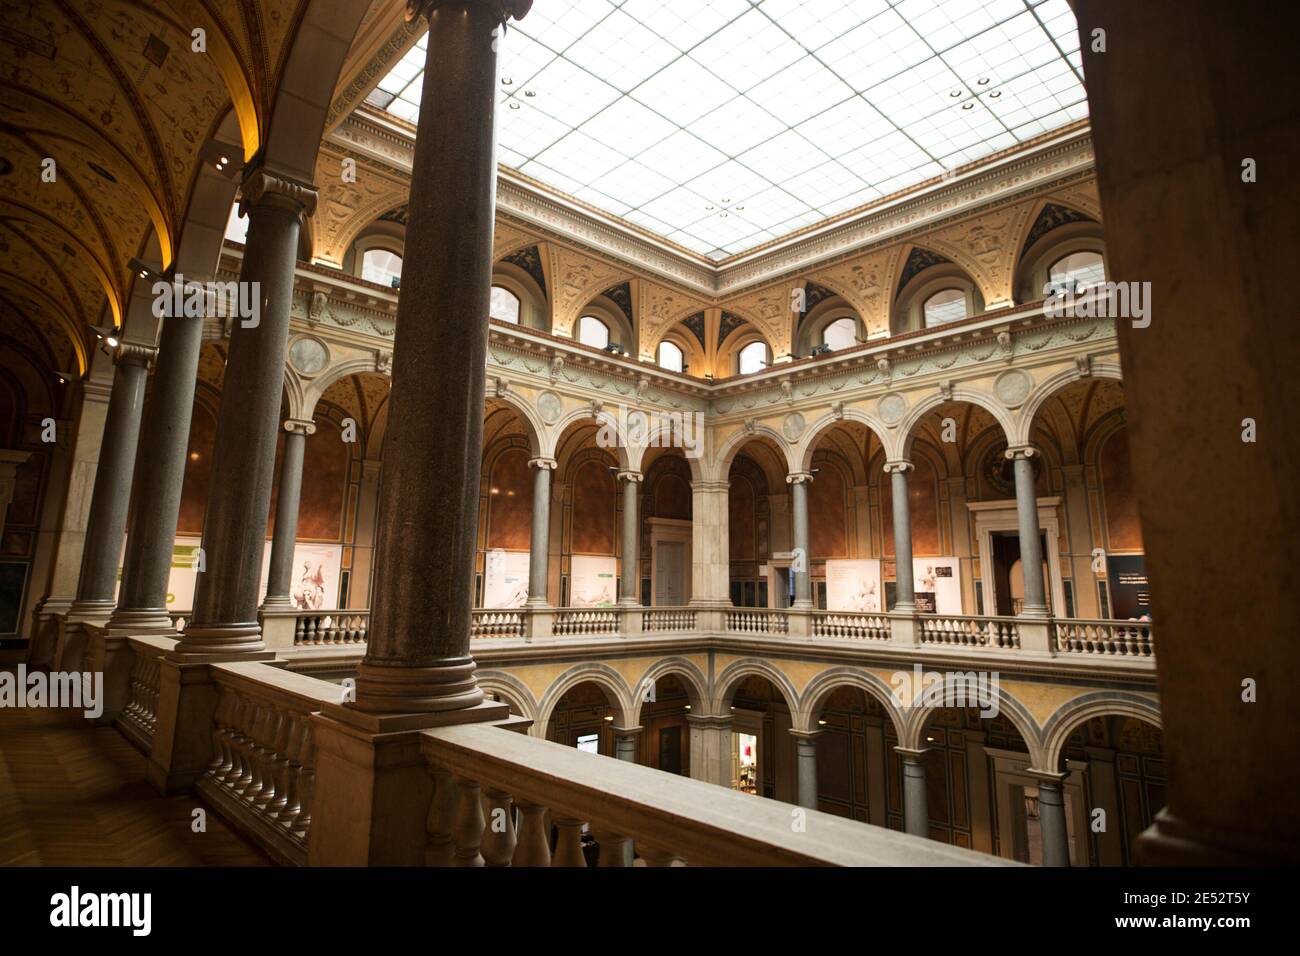 La cour intérieure du Musée des Arts appliqués (MAK) à Vienne, Autriche. Banque D'Images